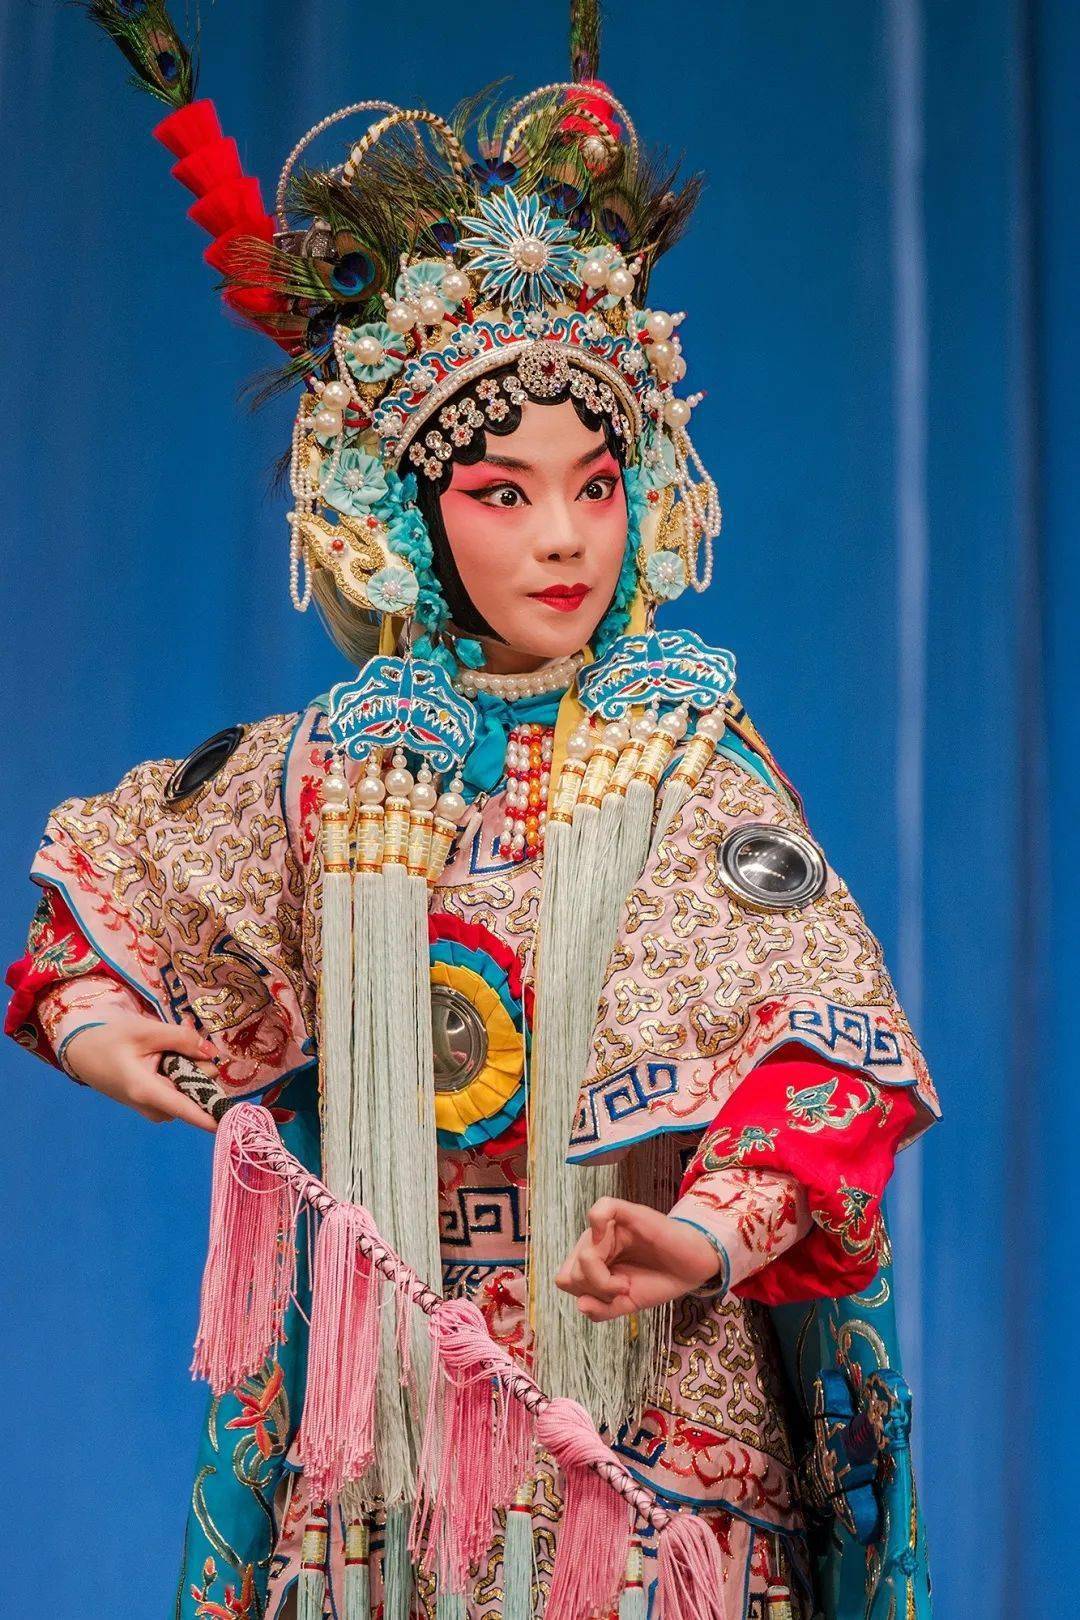 将由北京京剧院优秀青年演员曹安琪带来这部尚派经典剧目《双阳公主